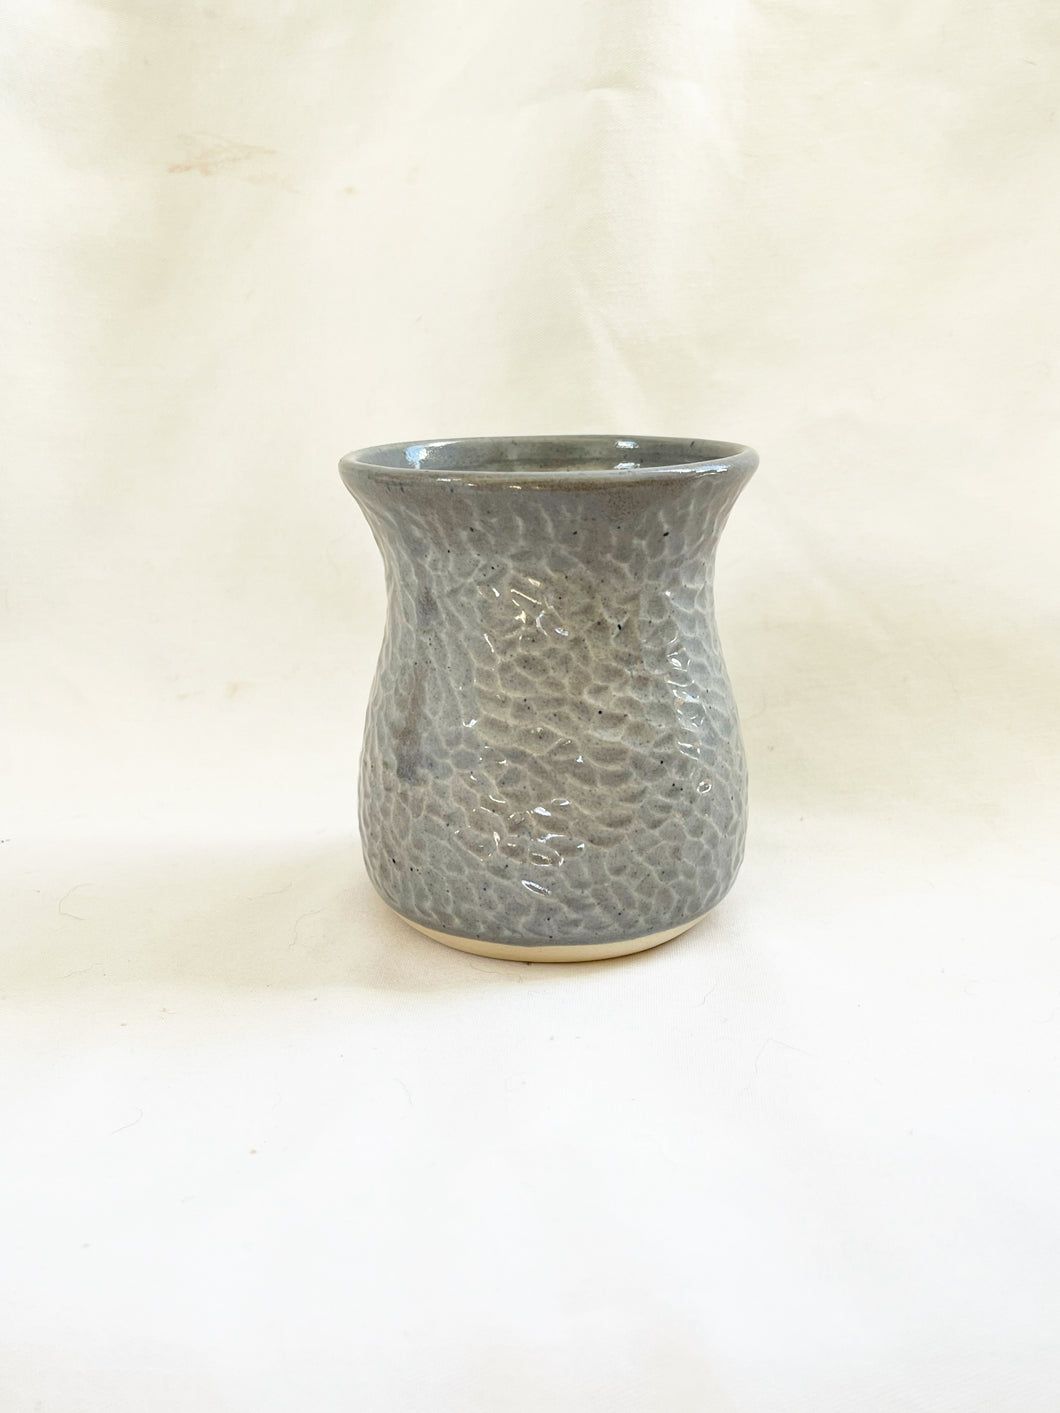 Gray/grey cup